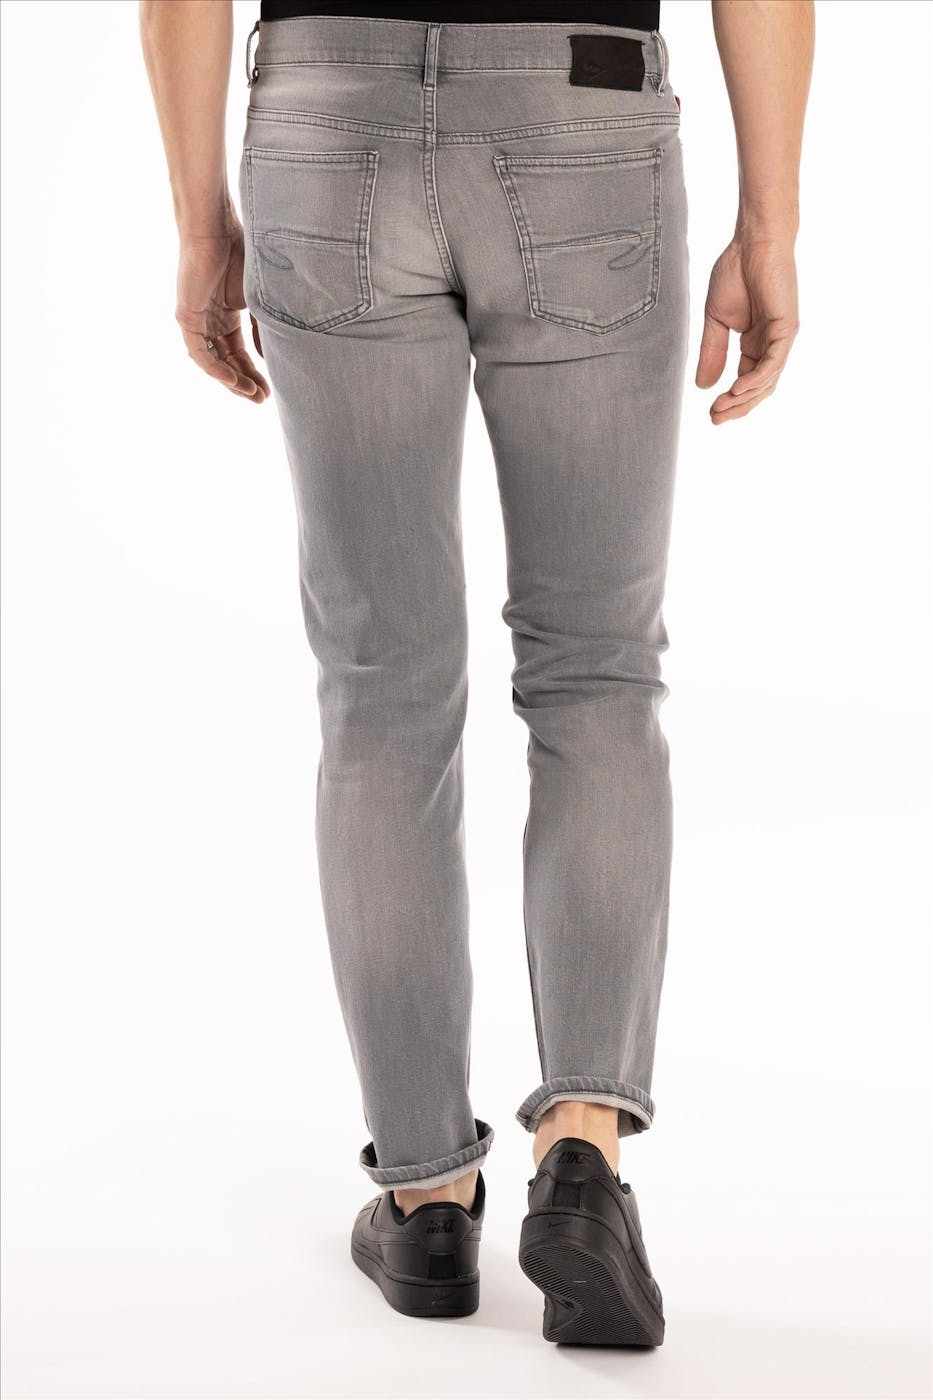 Lee Cooper - Grijze LC106ZP slim jeans